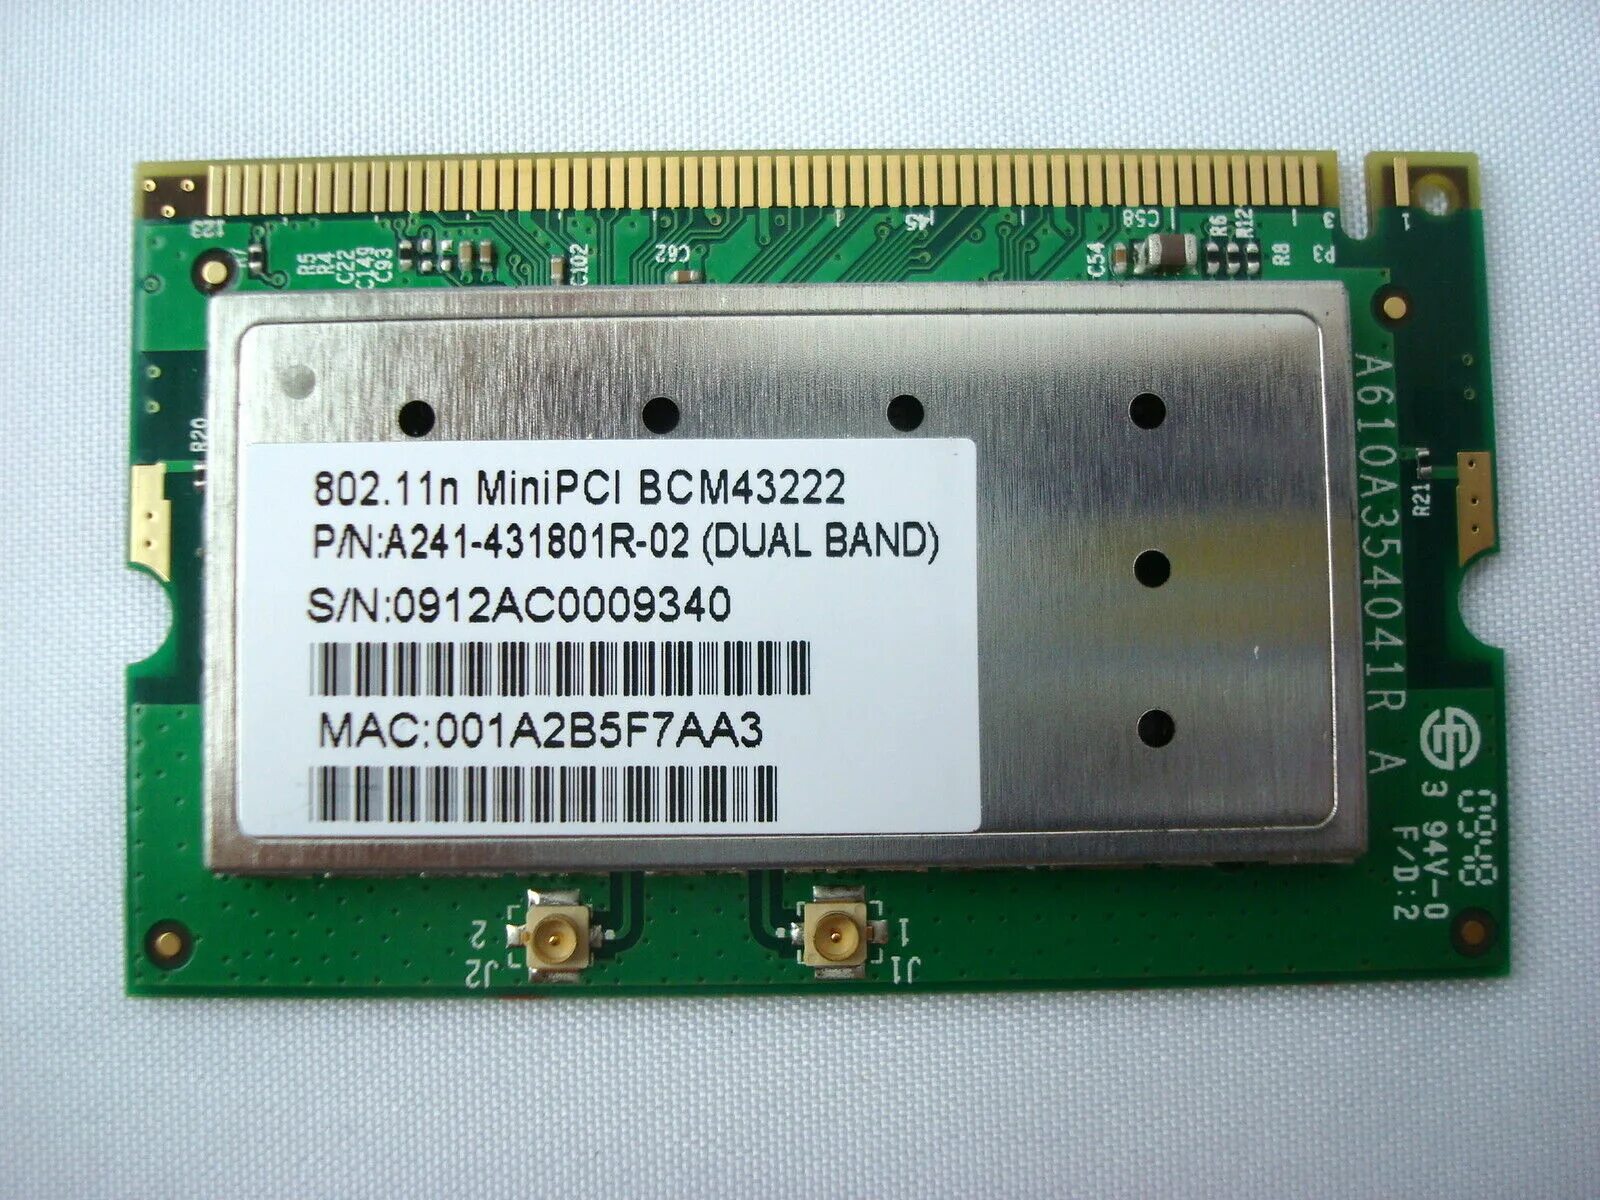 Broadcom 802.11 g